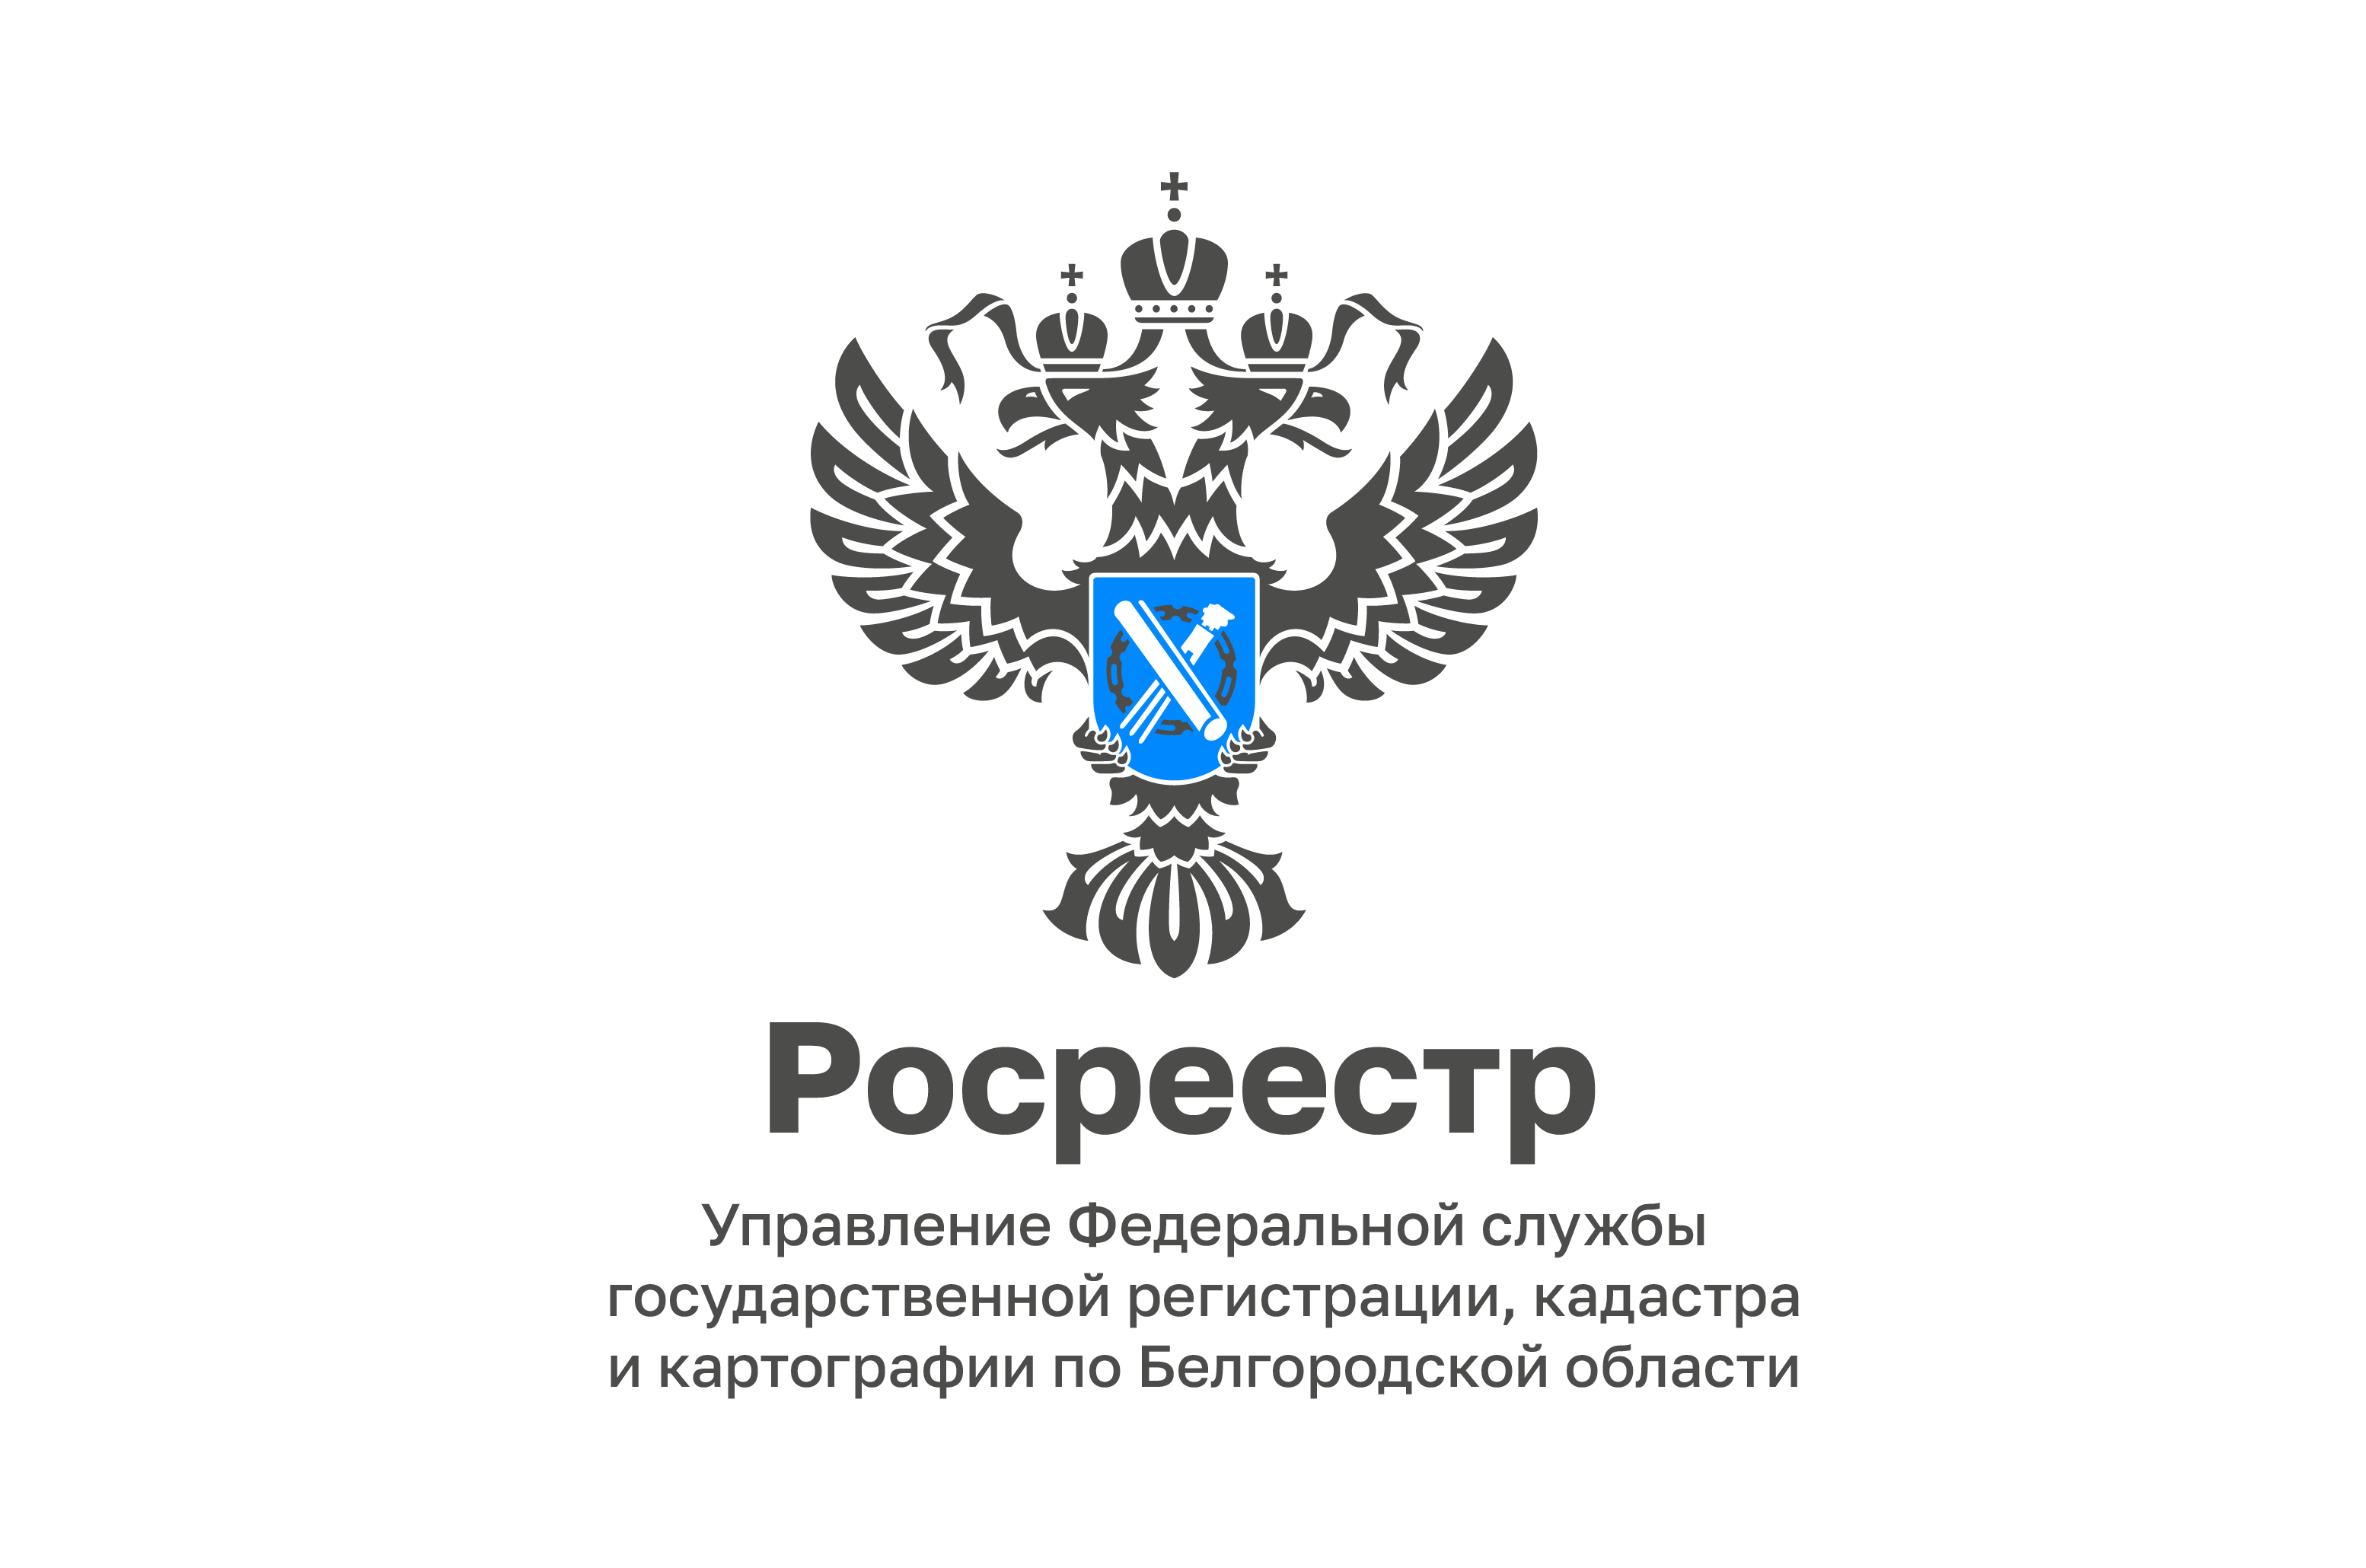 Популярность электронных услуг Росреестра на территории Белгородской области отметили в региональном Управлении.